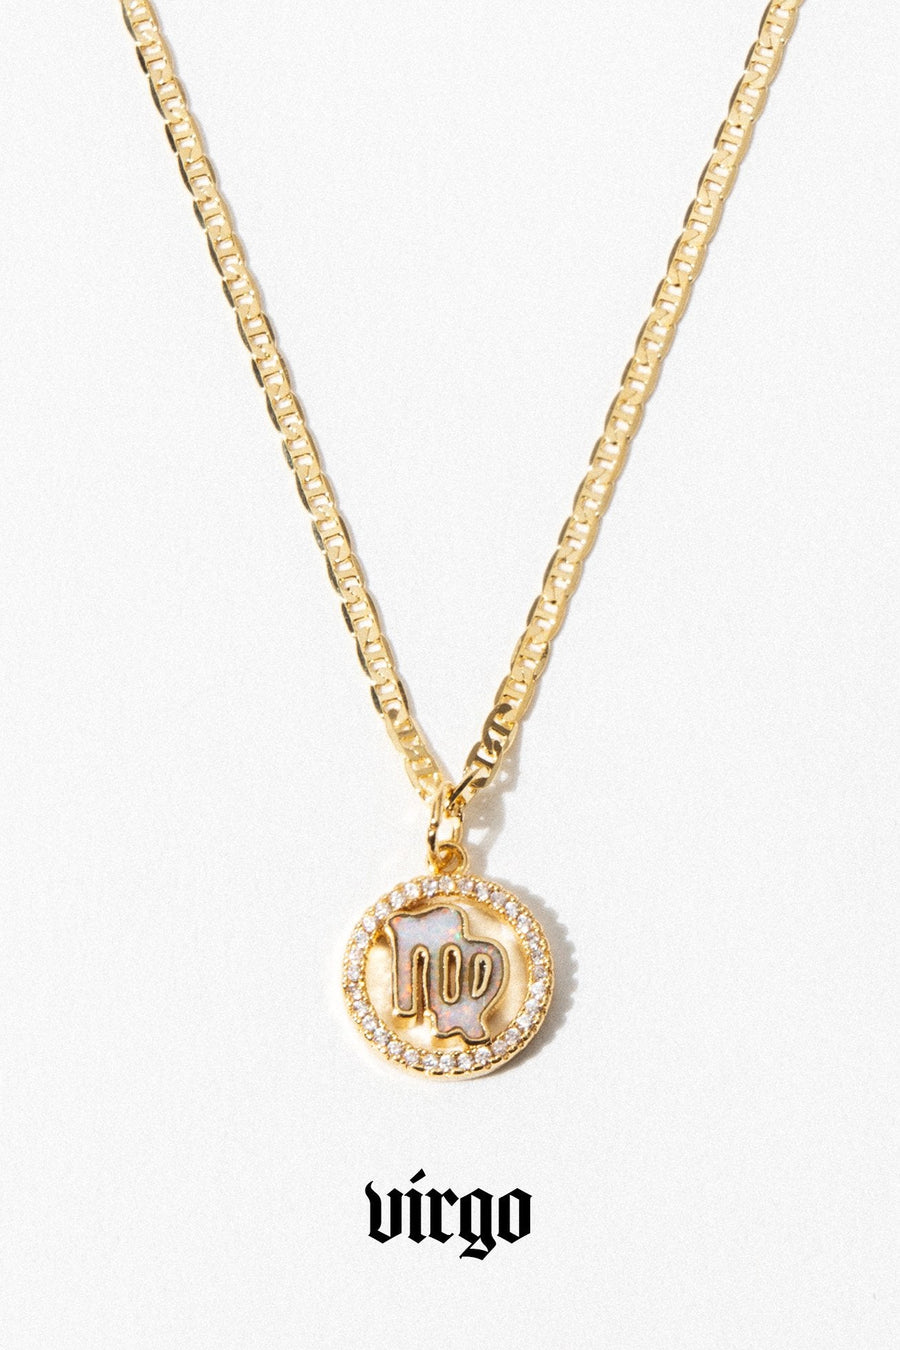 Dona Italia Jewelry Virgo / Gold / 18 Inches Cosmic Opal Zodiac Necklace